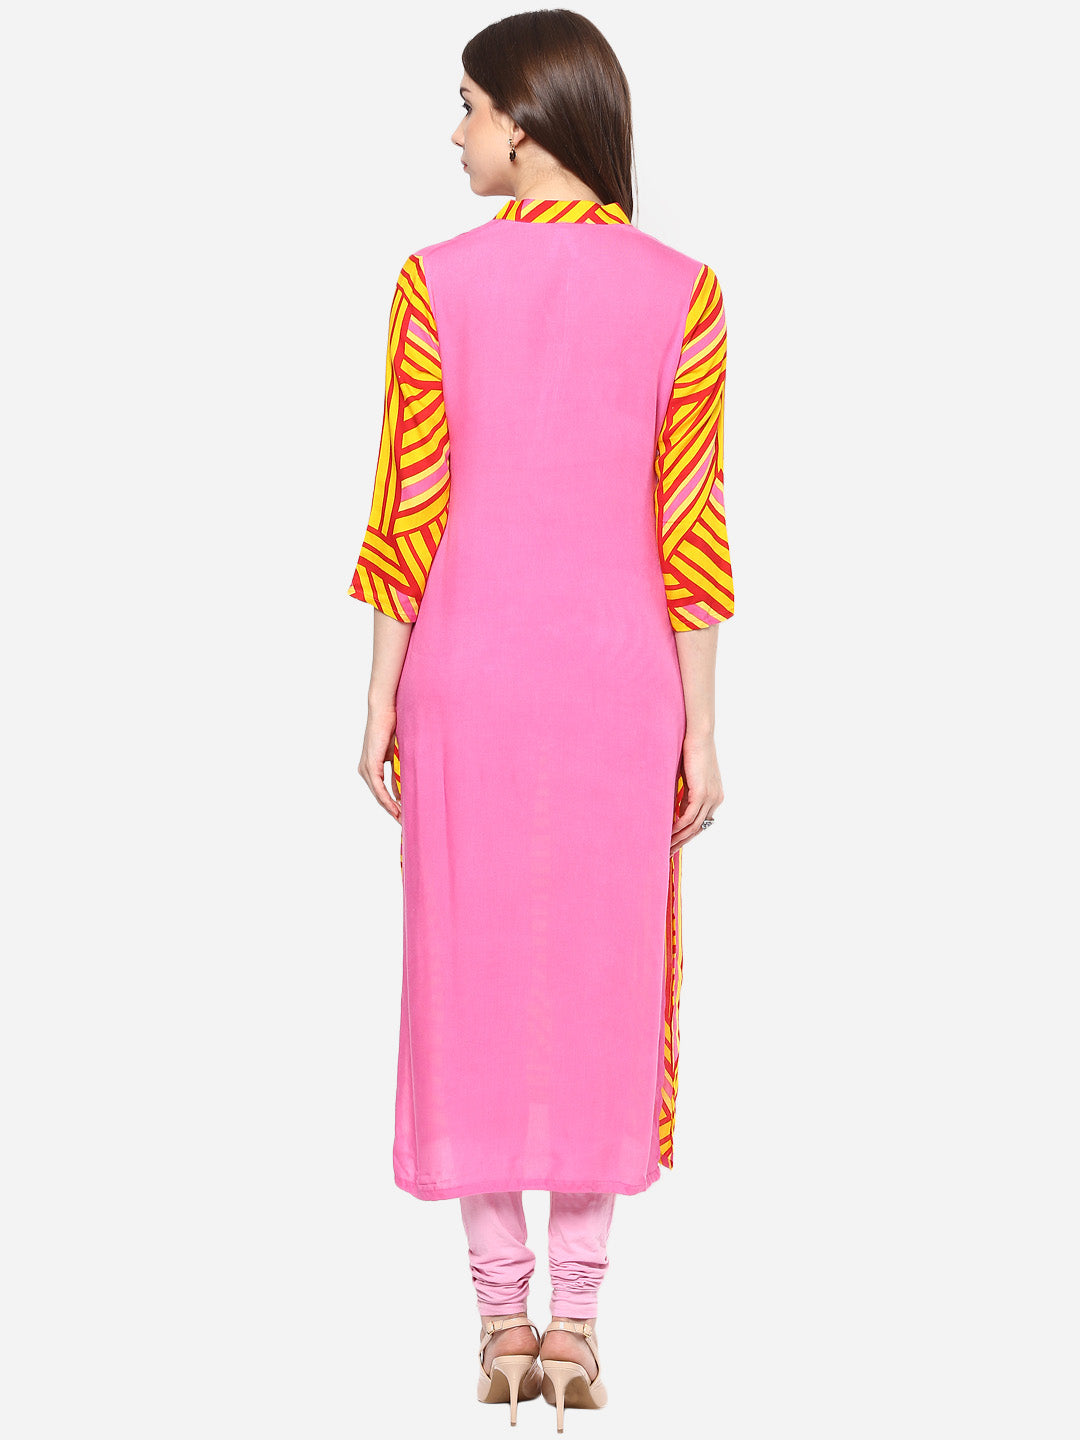 Women's Printed Pink and Yellow Kurti